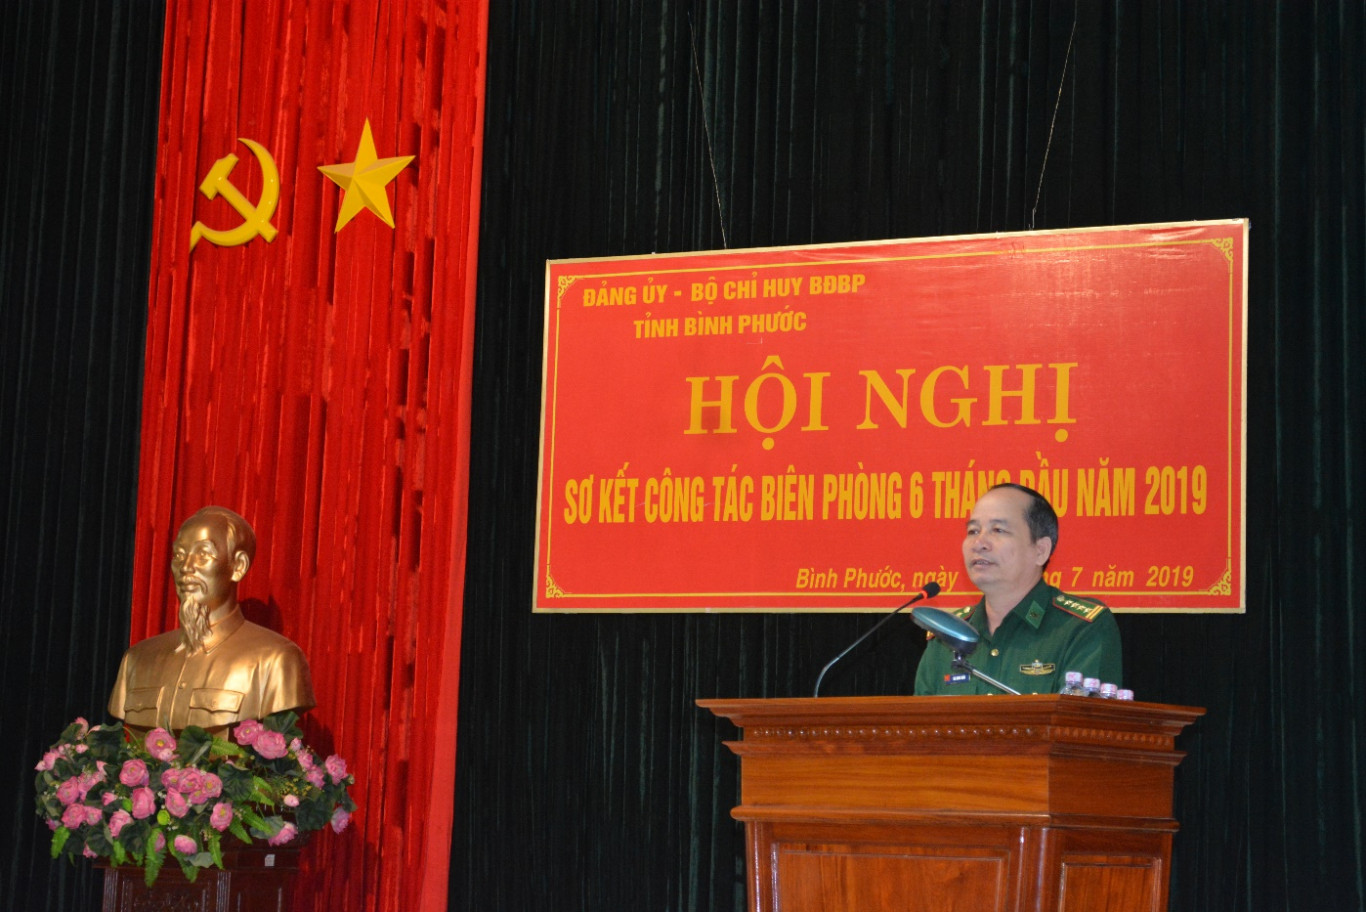 Đại tá Bùi Minh Soái, Chỉ huy trưởng BĐBP tỉnh kết luận hội nghị